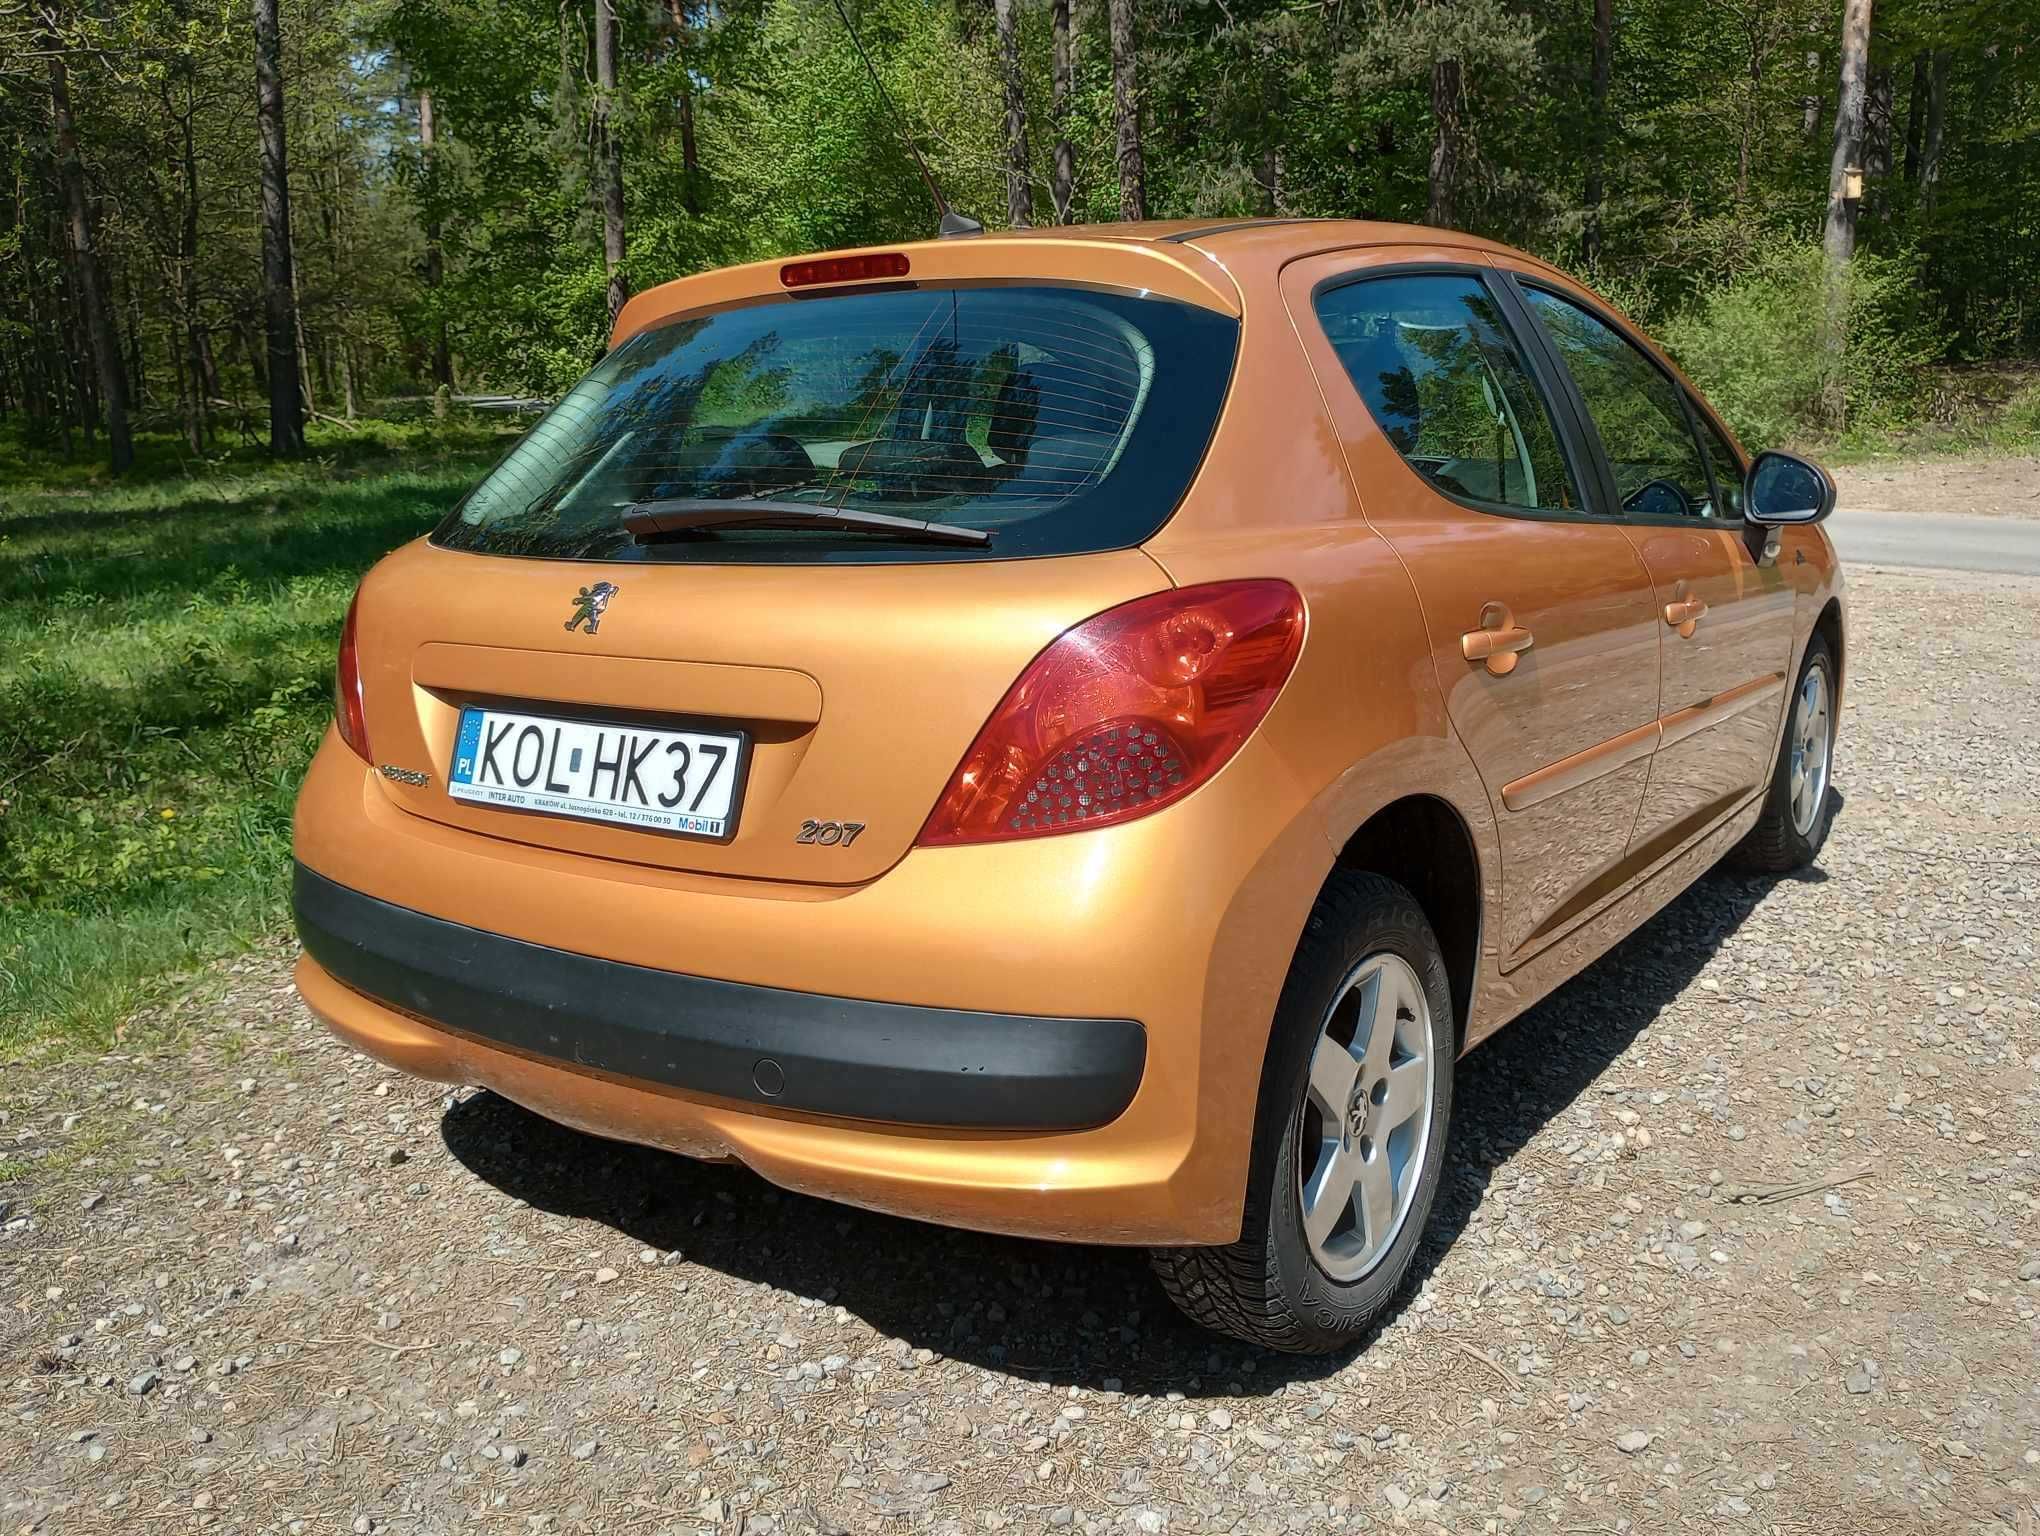 Peugeot 207 1.4 benzyna Piękny złoty kolor Jeden właściciel 10 lat